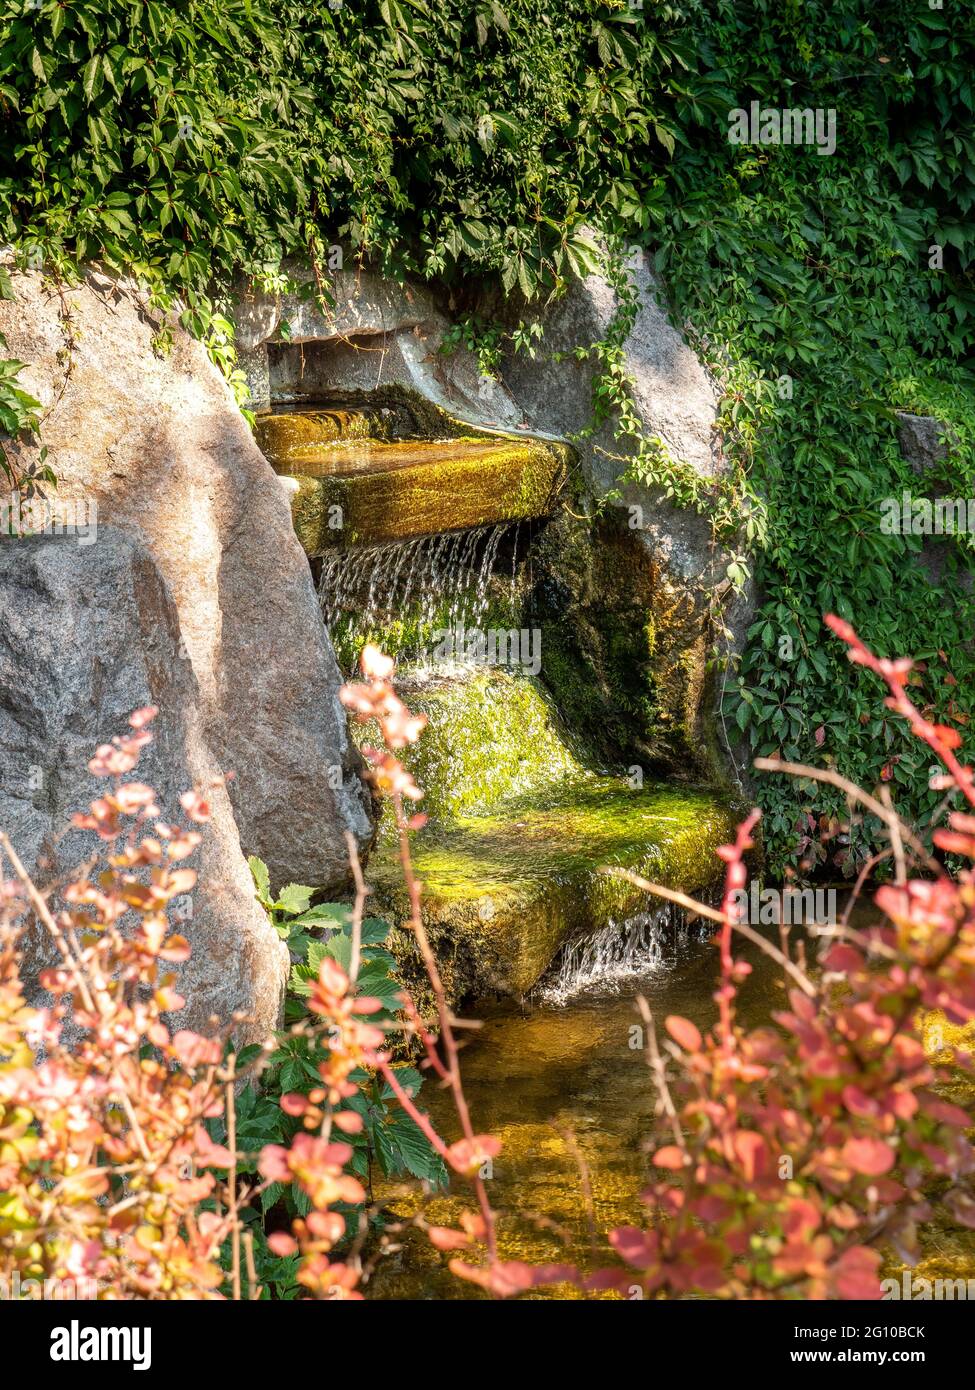 Vista attraverso i cespugli rossi sopra la fontana della cascata, in mezzo al verde strisciante con un bel gioco di luci e ombre nel Parco Sofiyivka, Uman. Foto Stock